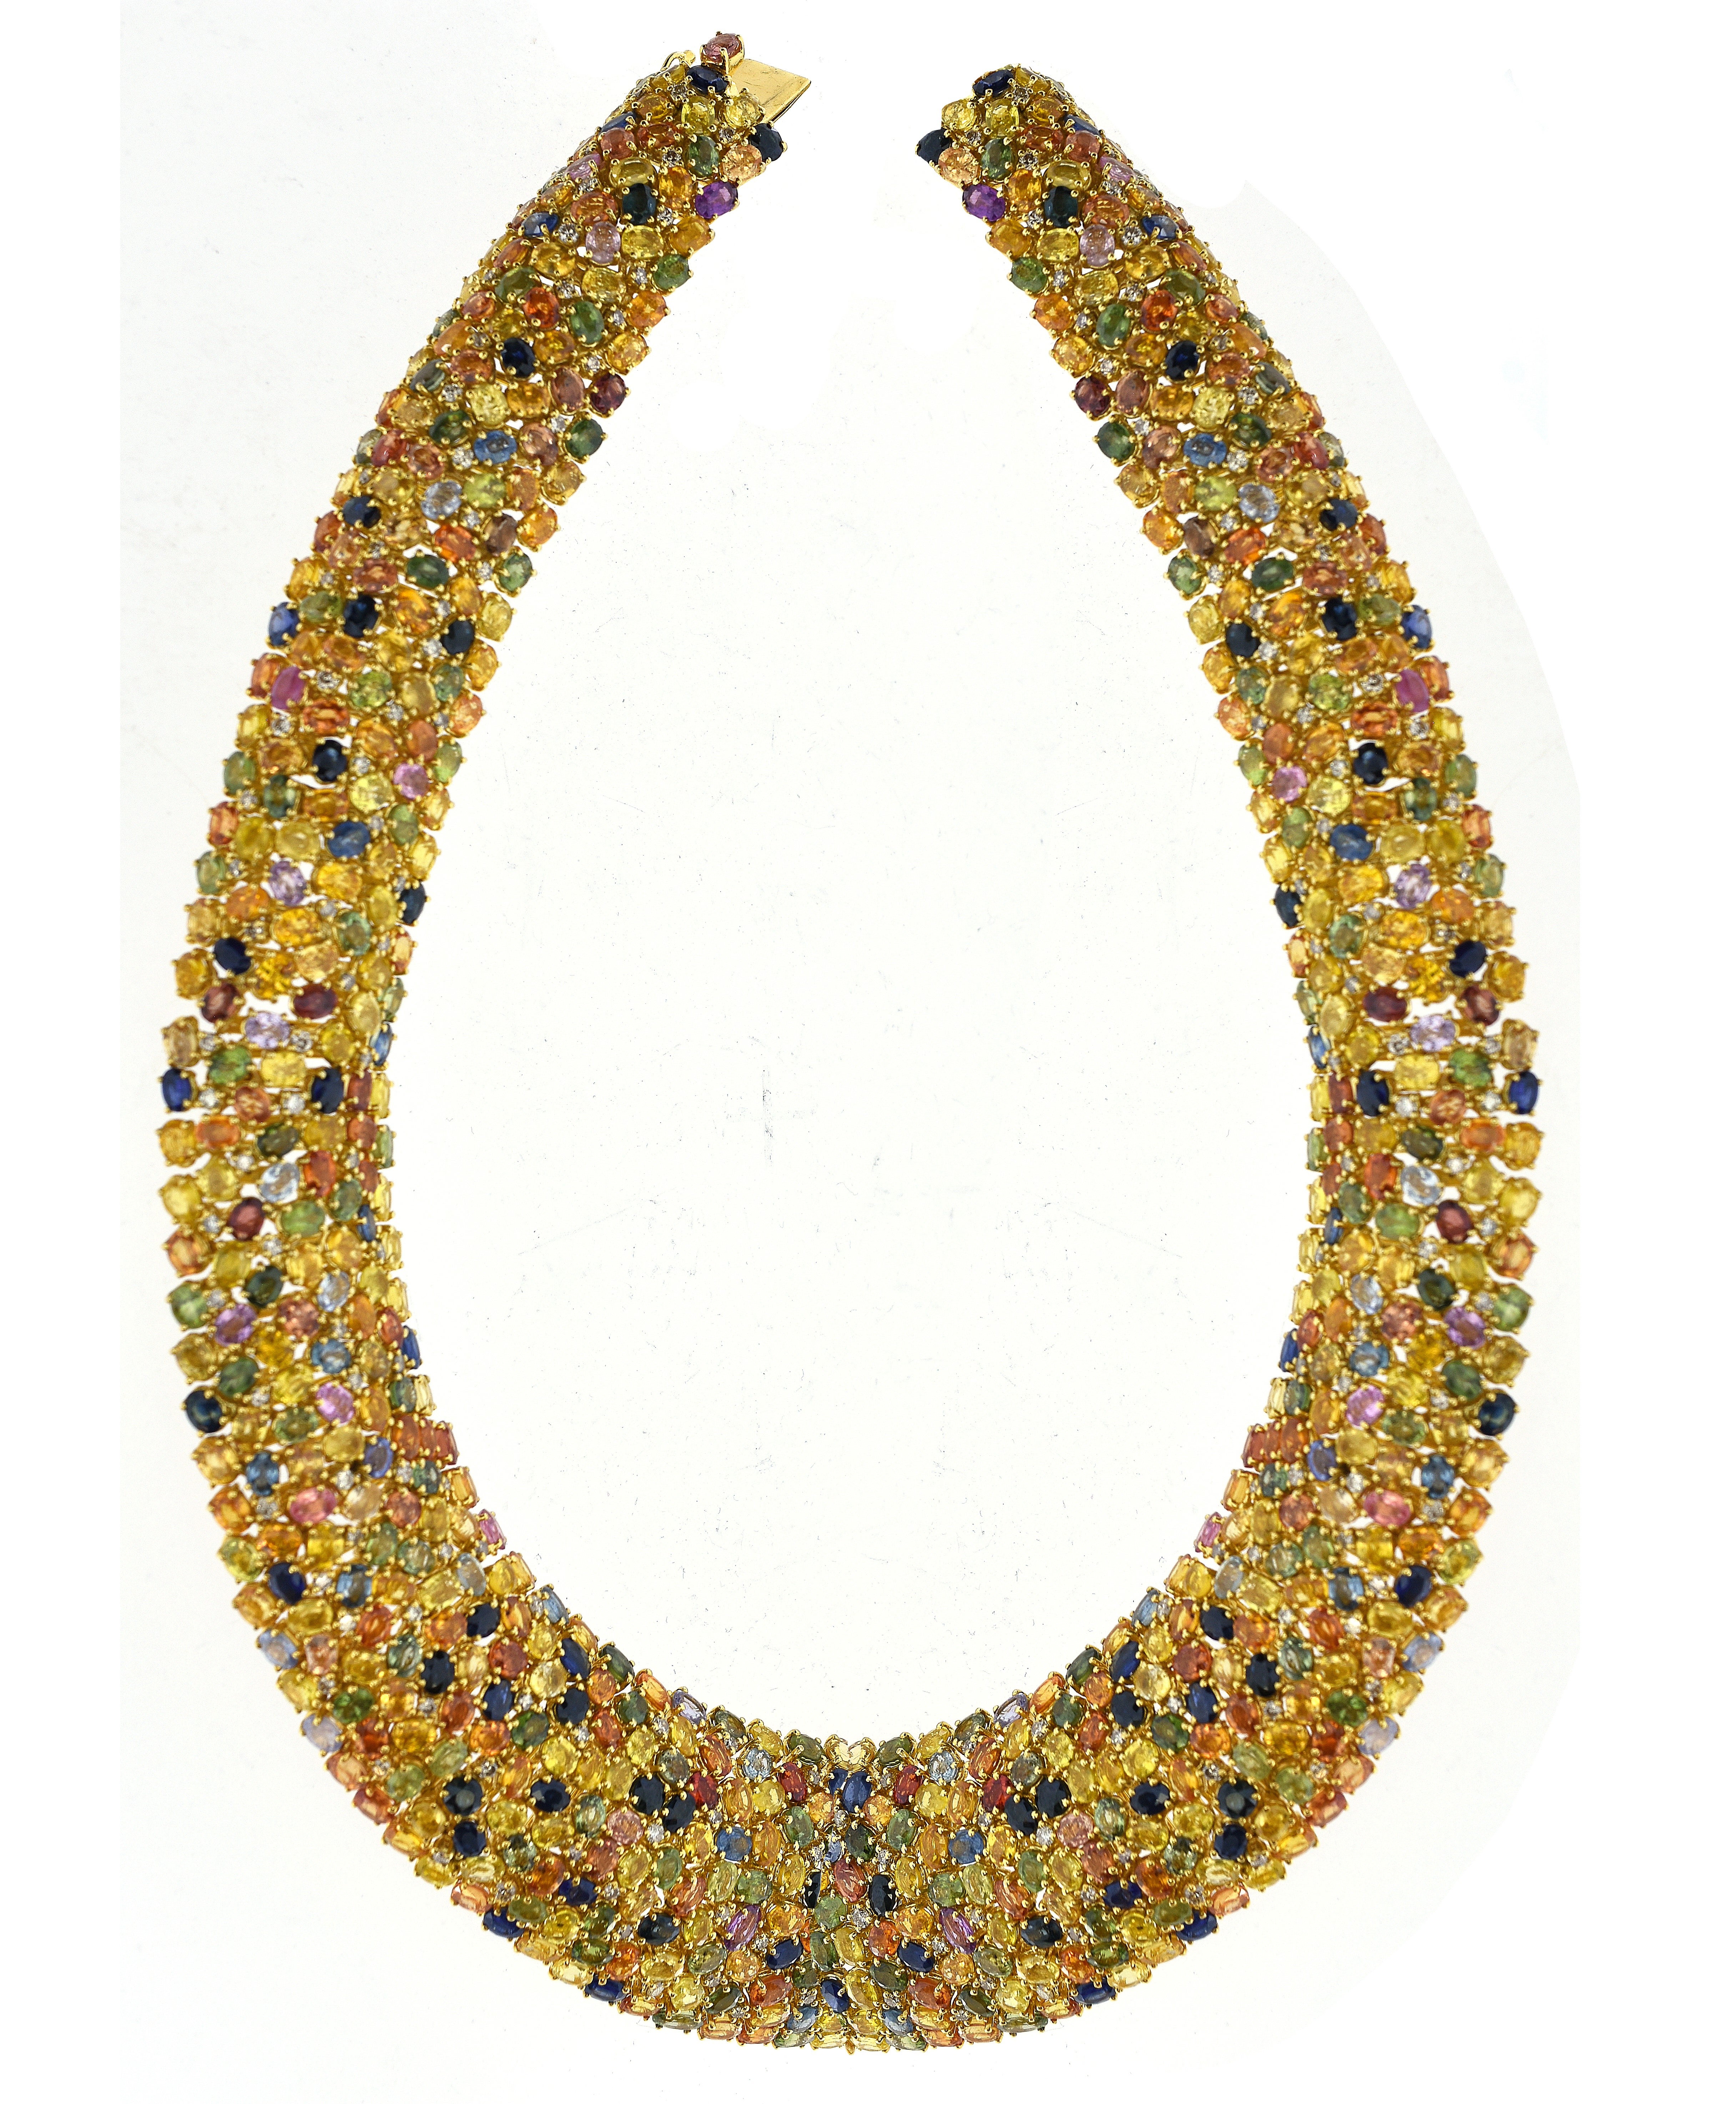 197.73 Carat Multi Color Diamond & Sapphire "Sweetie" Necklace